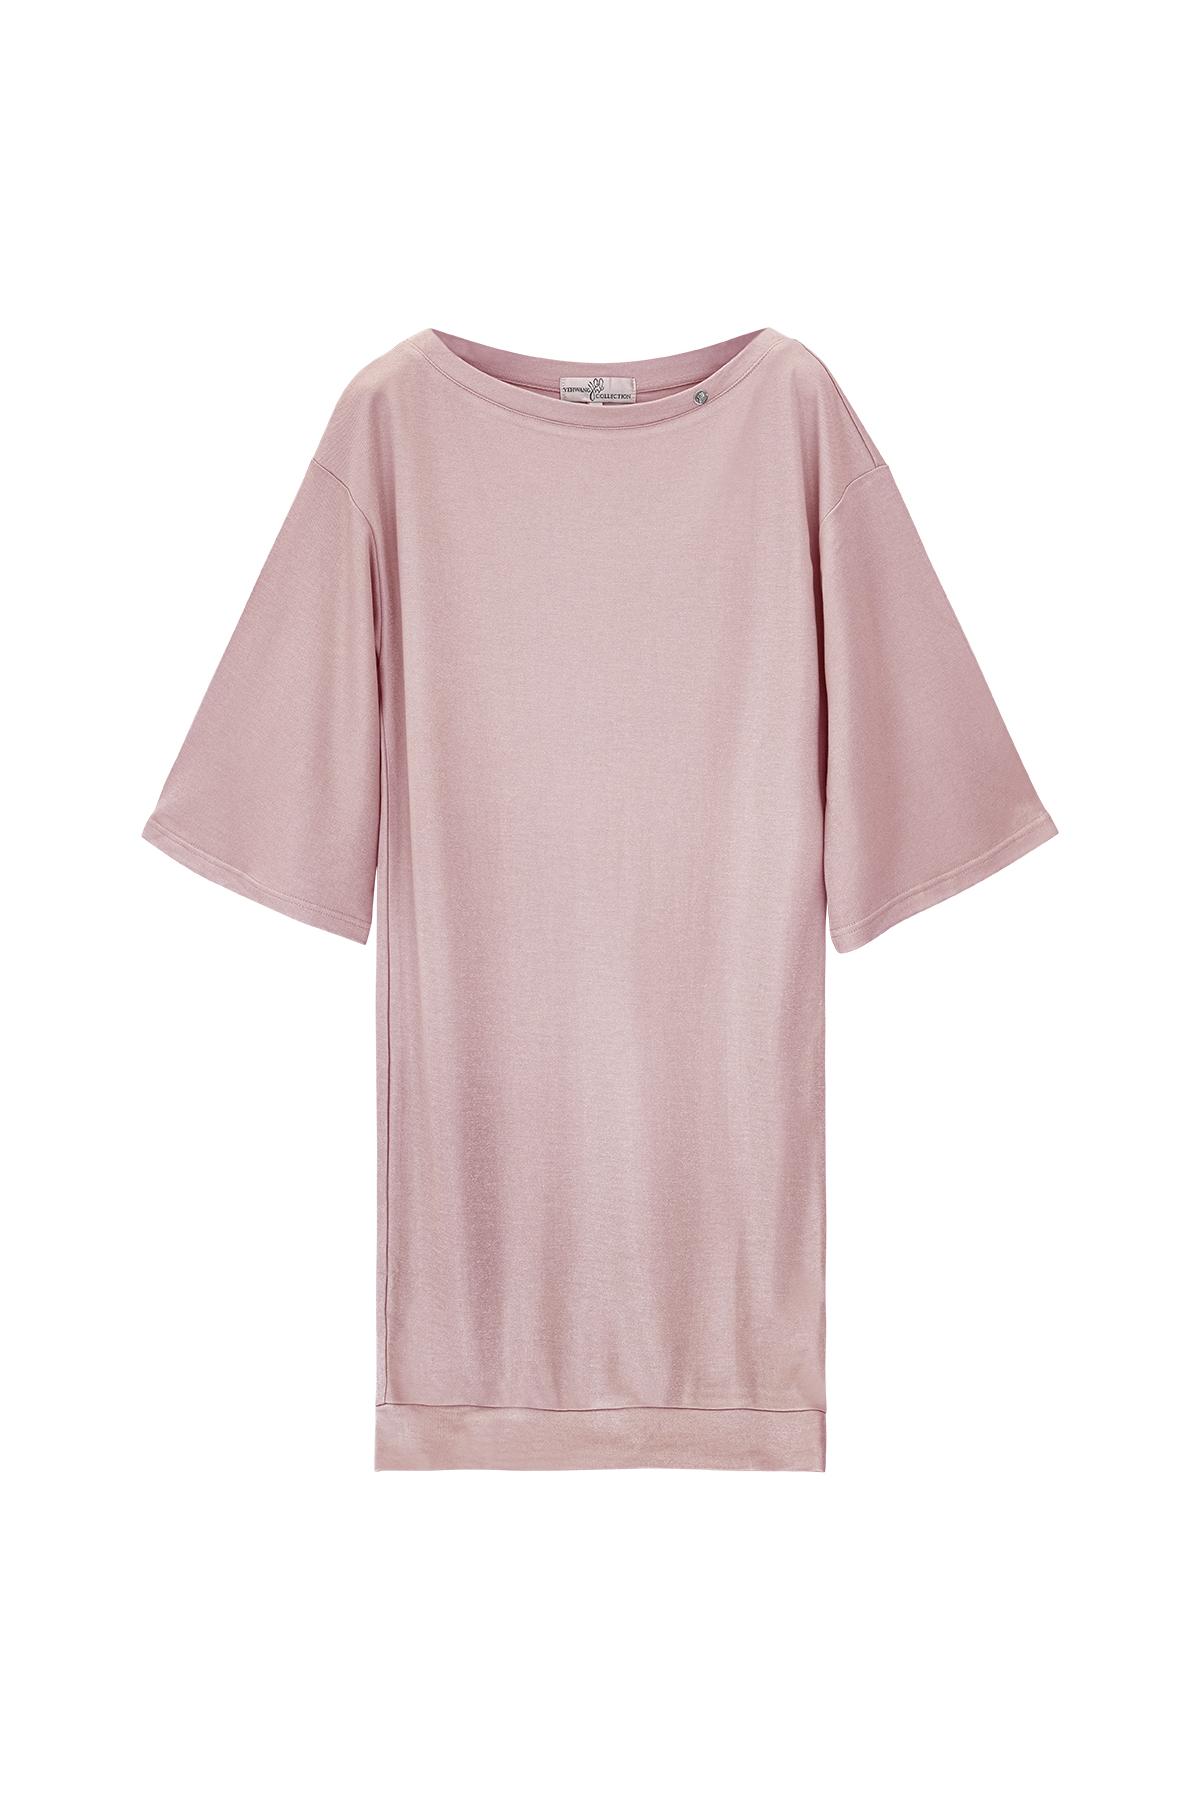 Parlak kaplamalı tişört elbise Pink L 